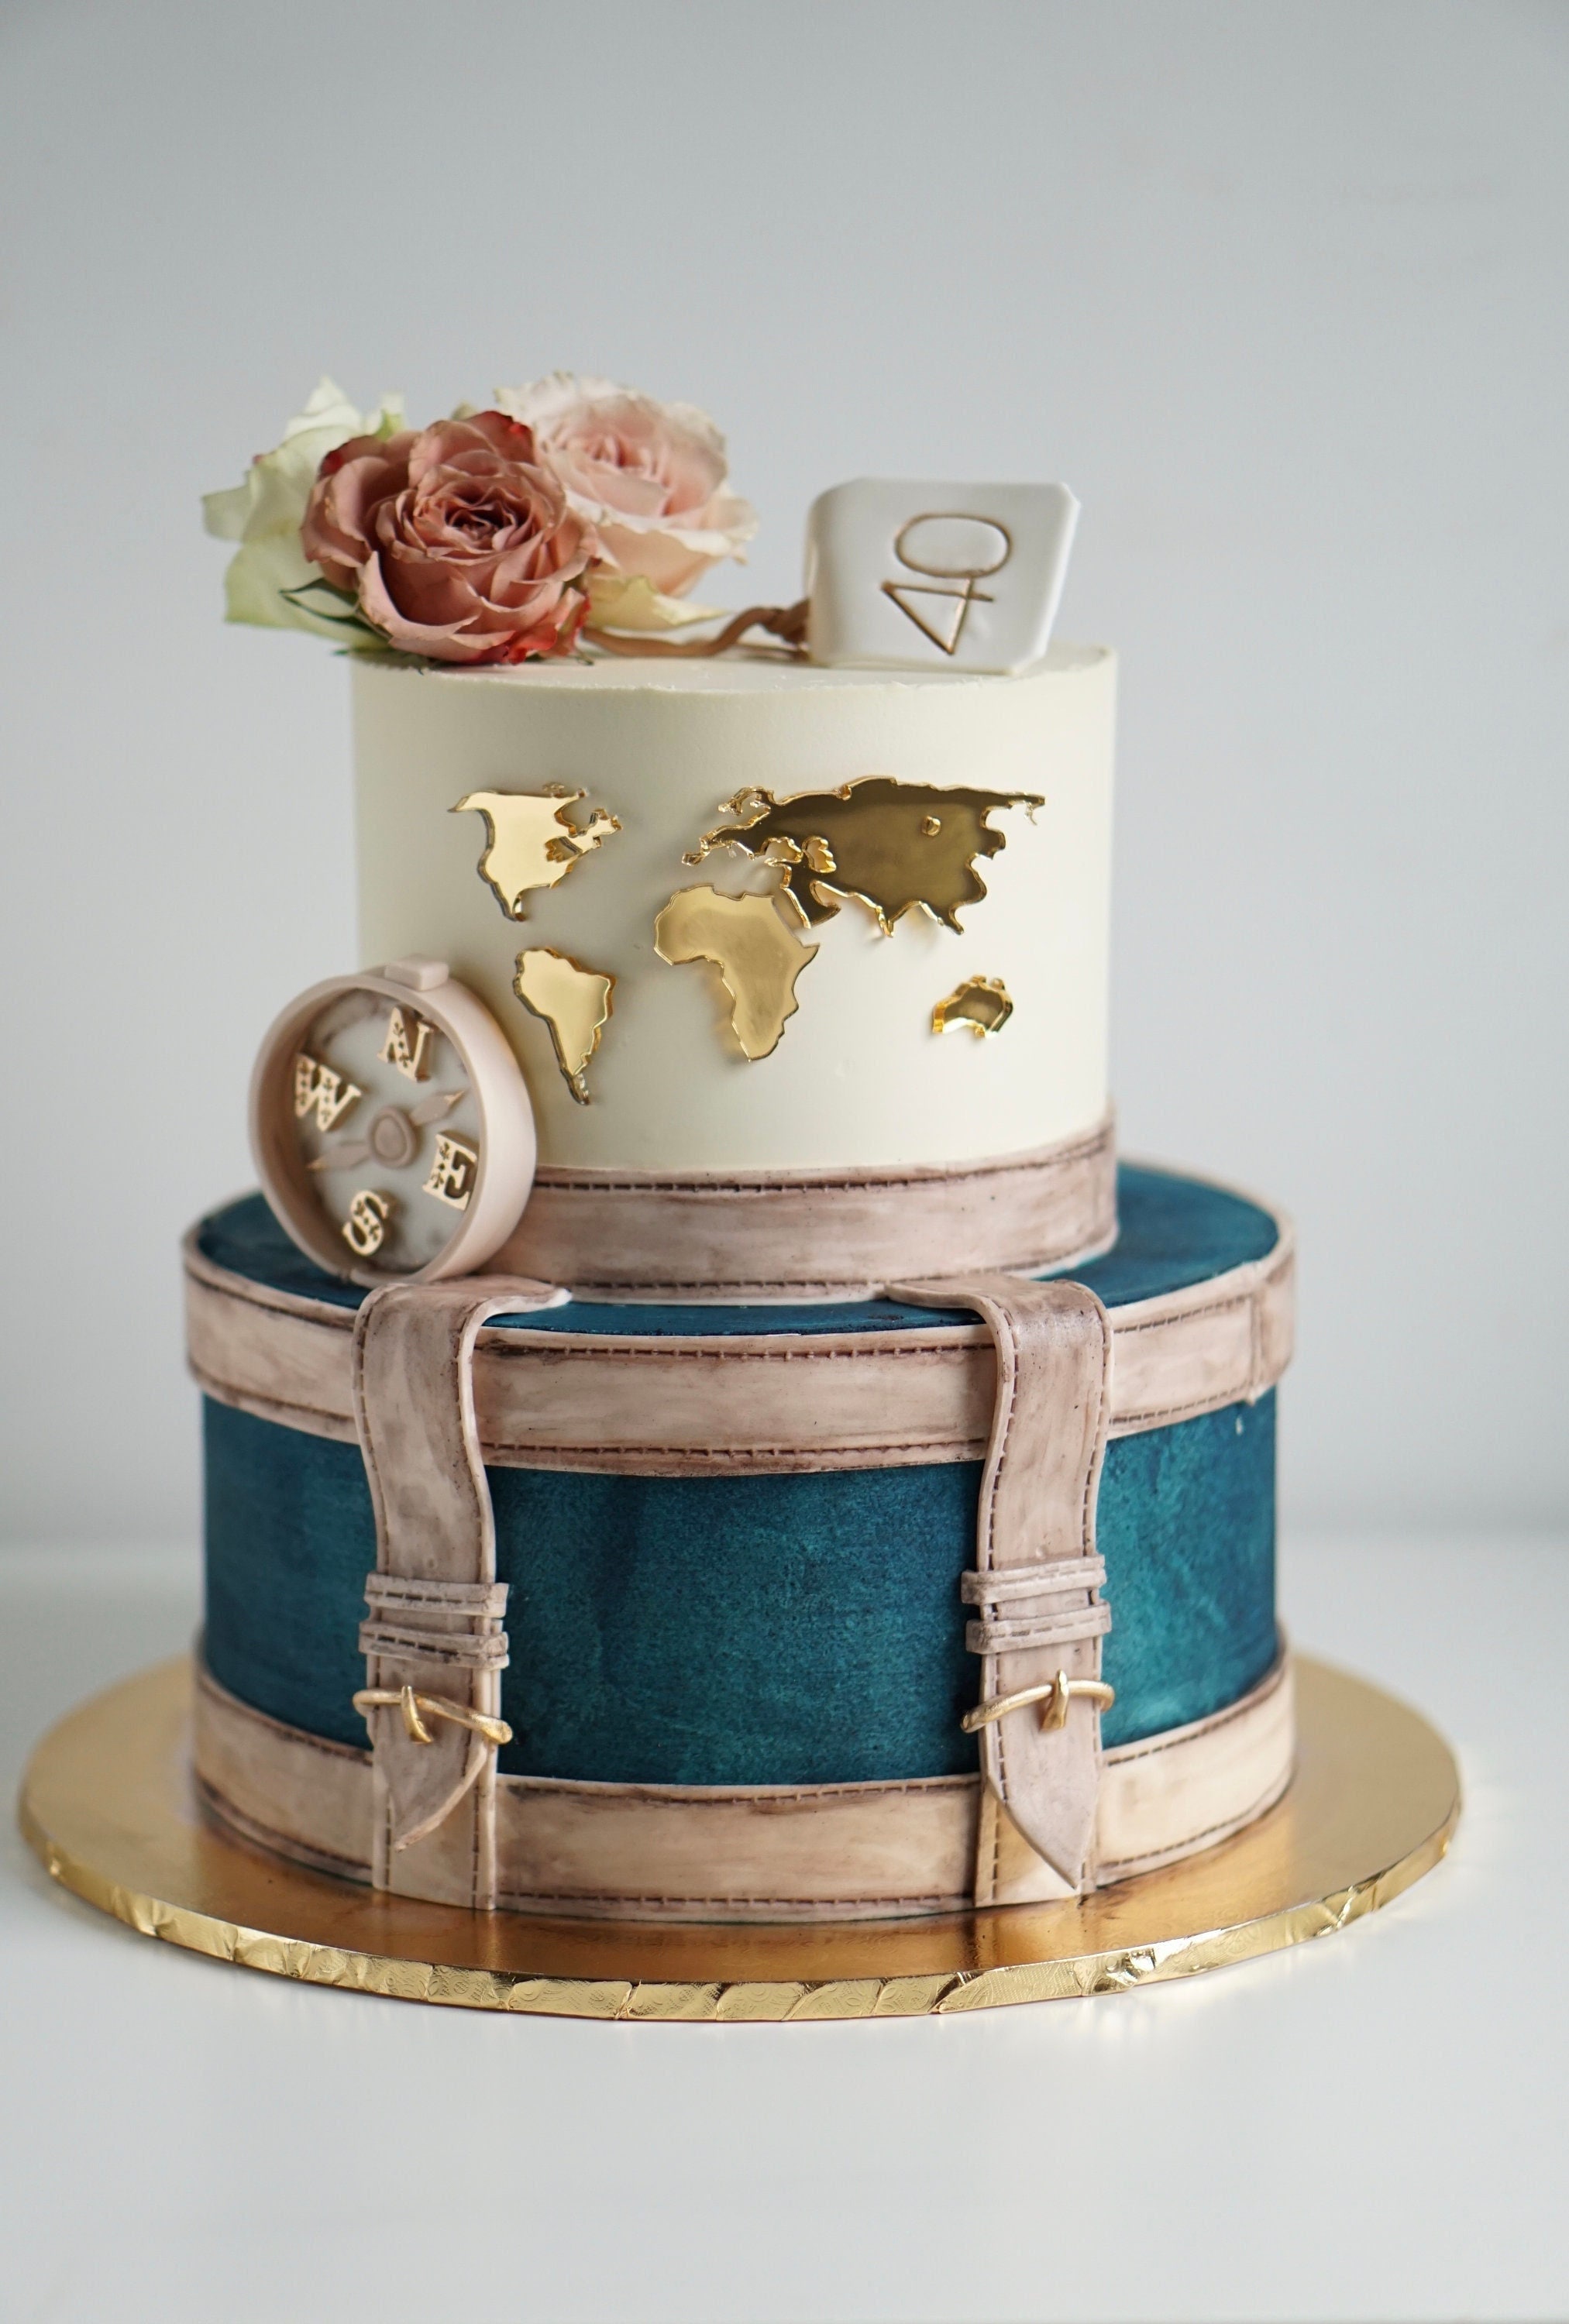 DAMILY® Decoration Gateau Anniversaire - Joyeux Anniversaire Cake